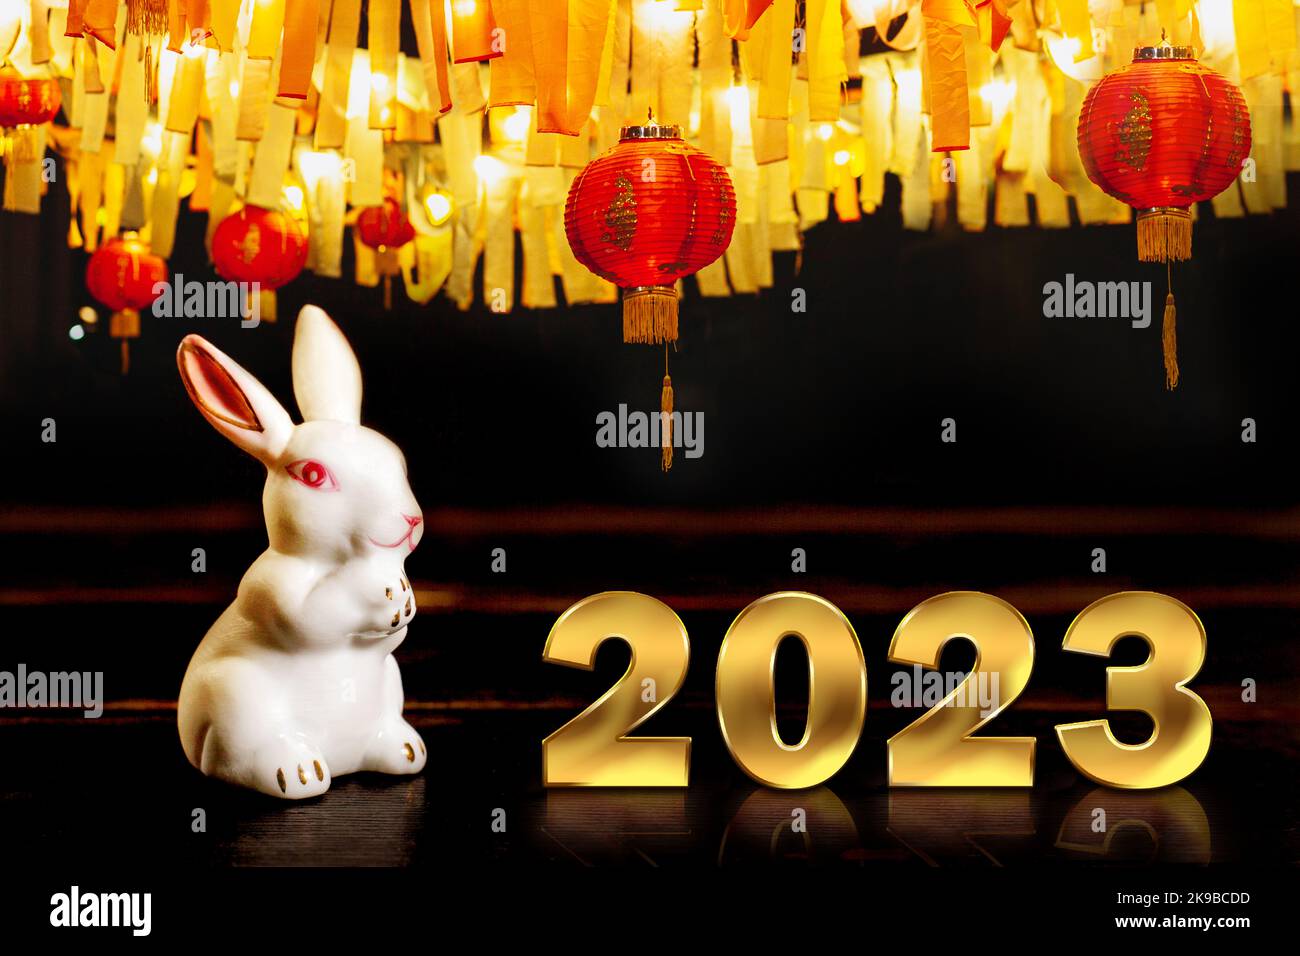 Nouvel an chinois 2023 - année du lapin selon le calendrier lunaire, symbole du zodiaque chinois. Banque D'Images